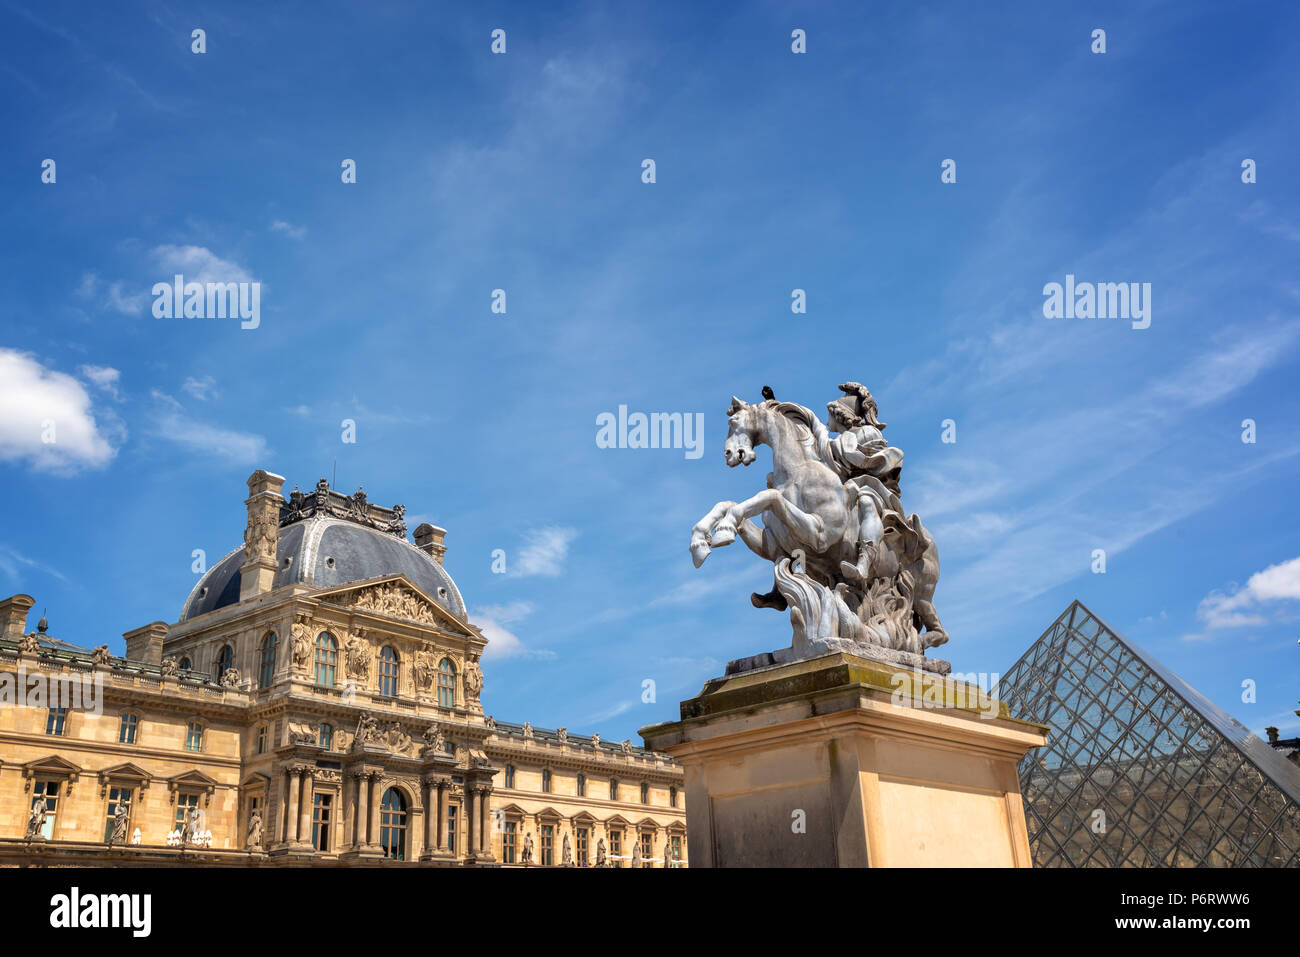 La cour principale du palais du Louvre avec une statue équestre du roi Louis XIV Banque D'Images